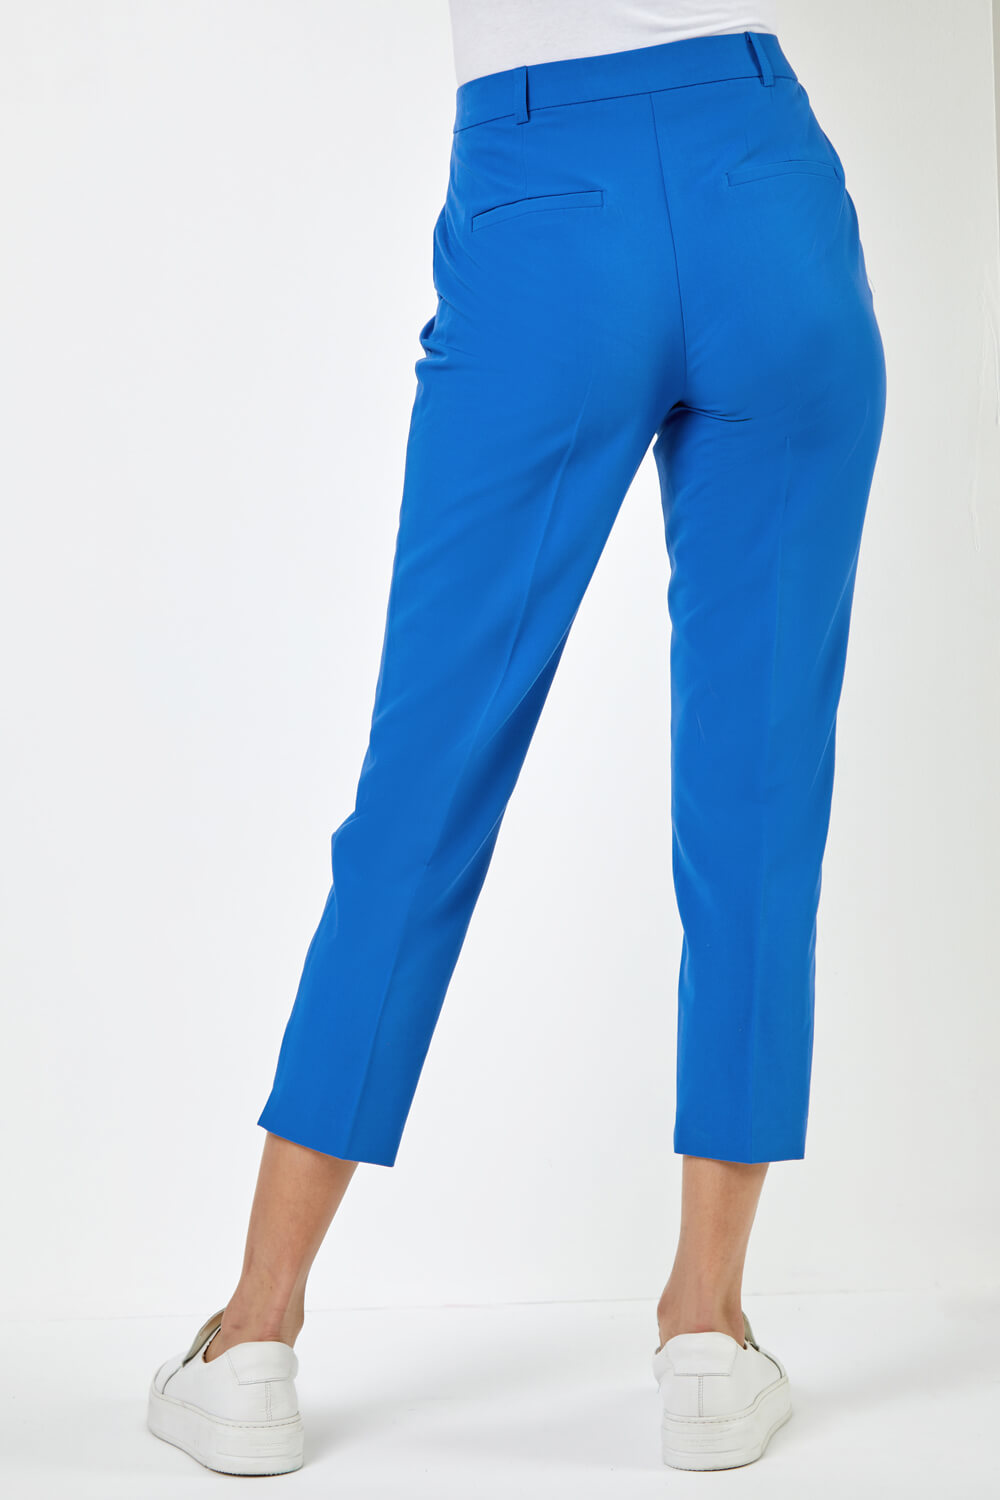 VAN HEUSEN SPORT Tapered Men Light Blue Trousers  Buy VAN HEUSEN SPORT  Tapered Men Light Blue Trousers Online at Best Prices in India   Flipkartcom